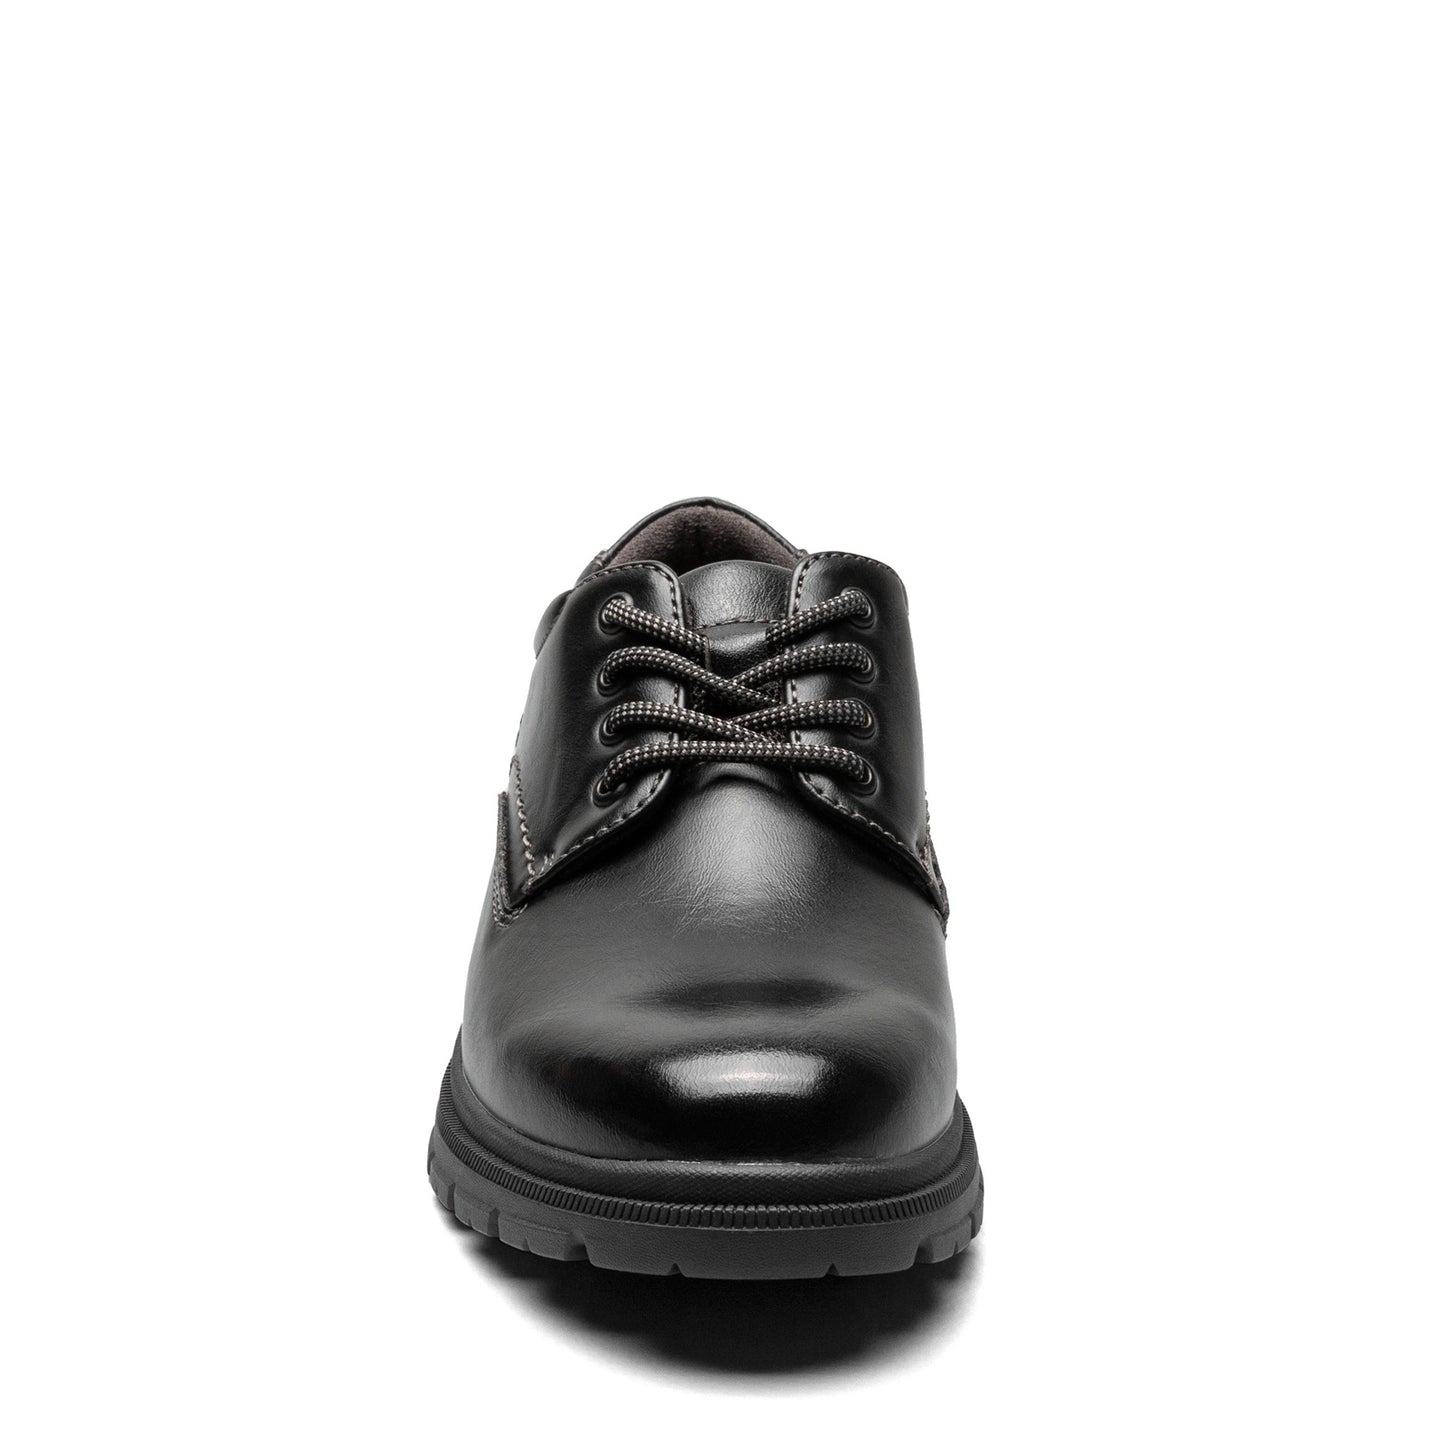 Peltz Shoes  Boy's Florsheim Lookout JR Plain Toe Oxford – Little Kid & Big Kid Black 16688-001